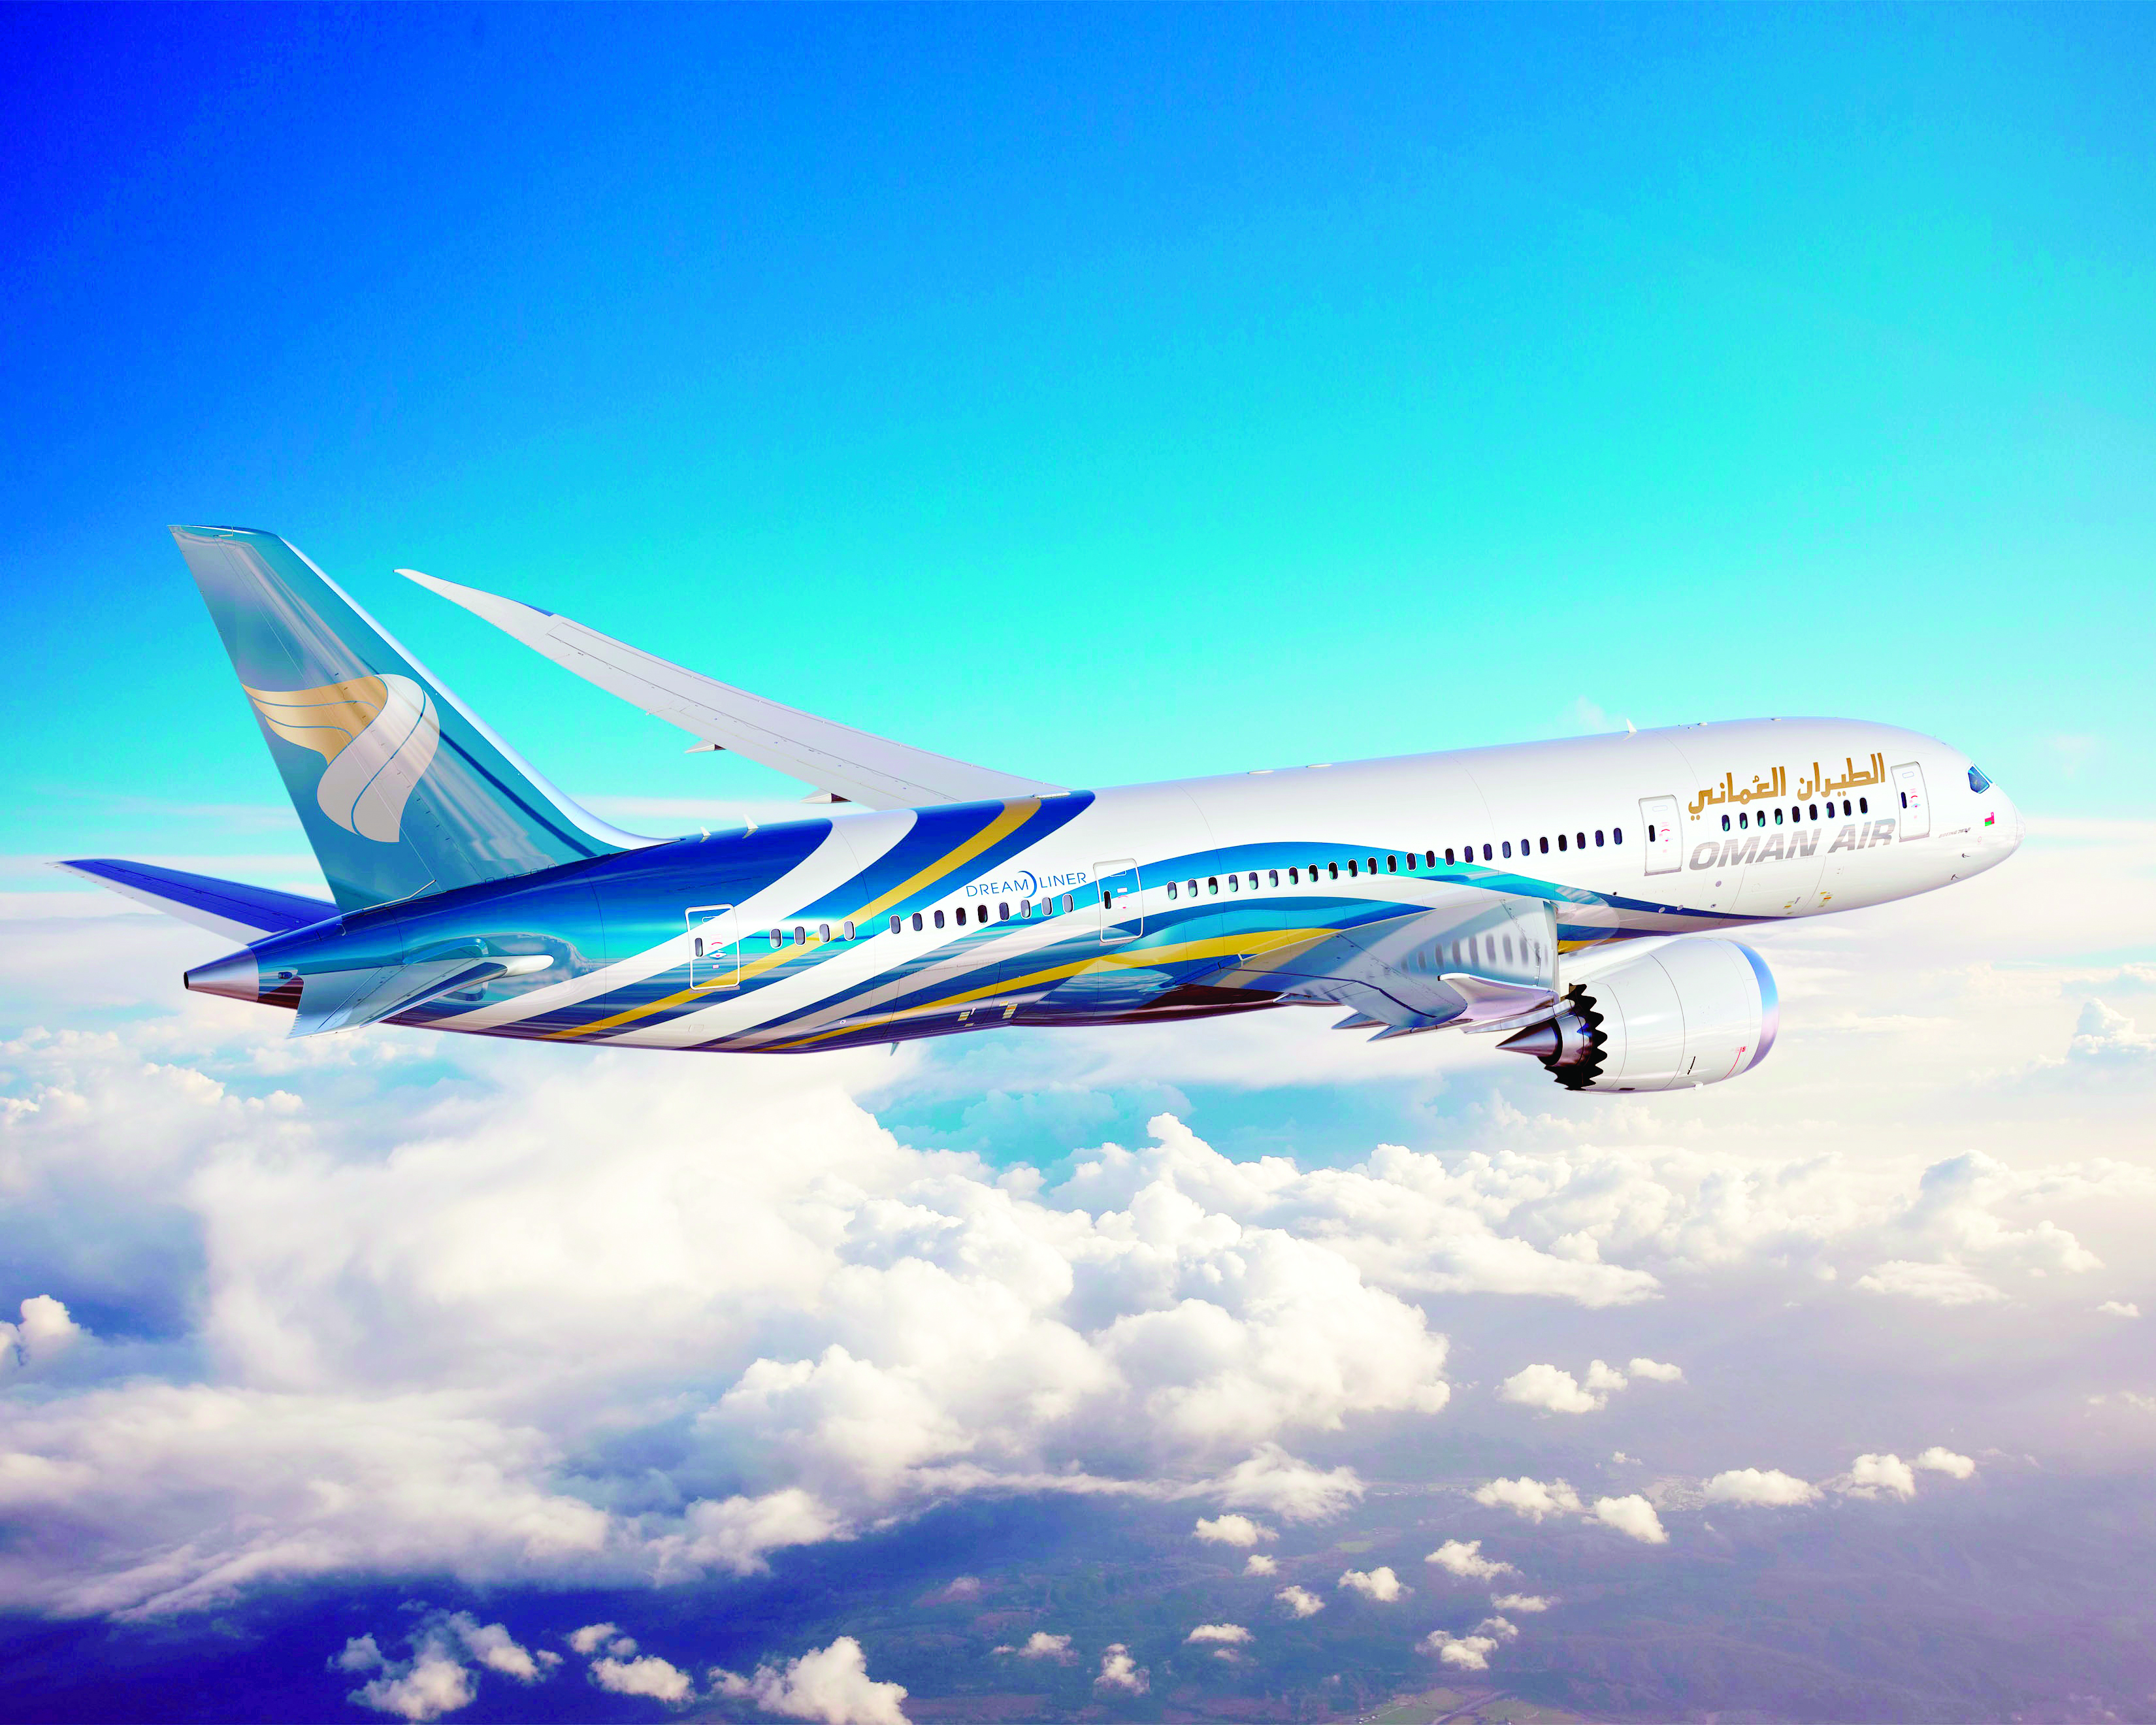 الطيران العُماني يوقع اتفاقية المشاركة بالرمز مع الخطوط الماليزية